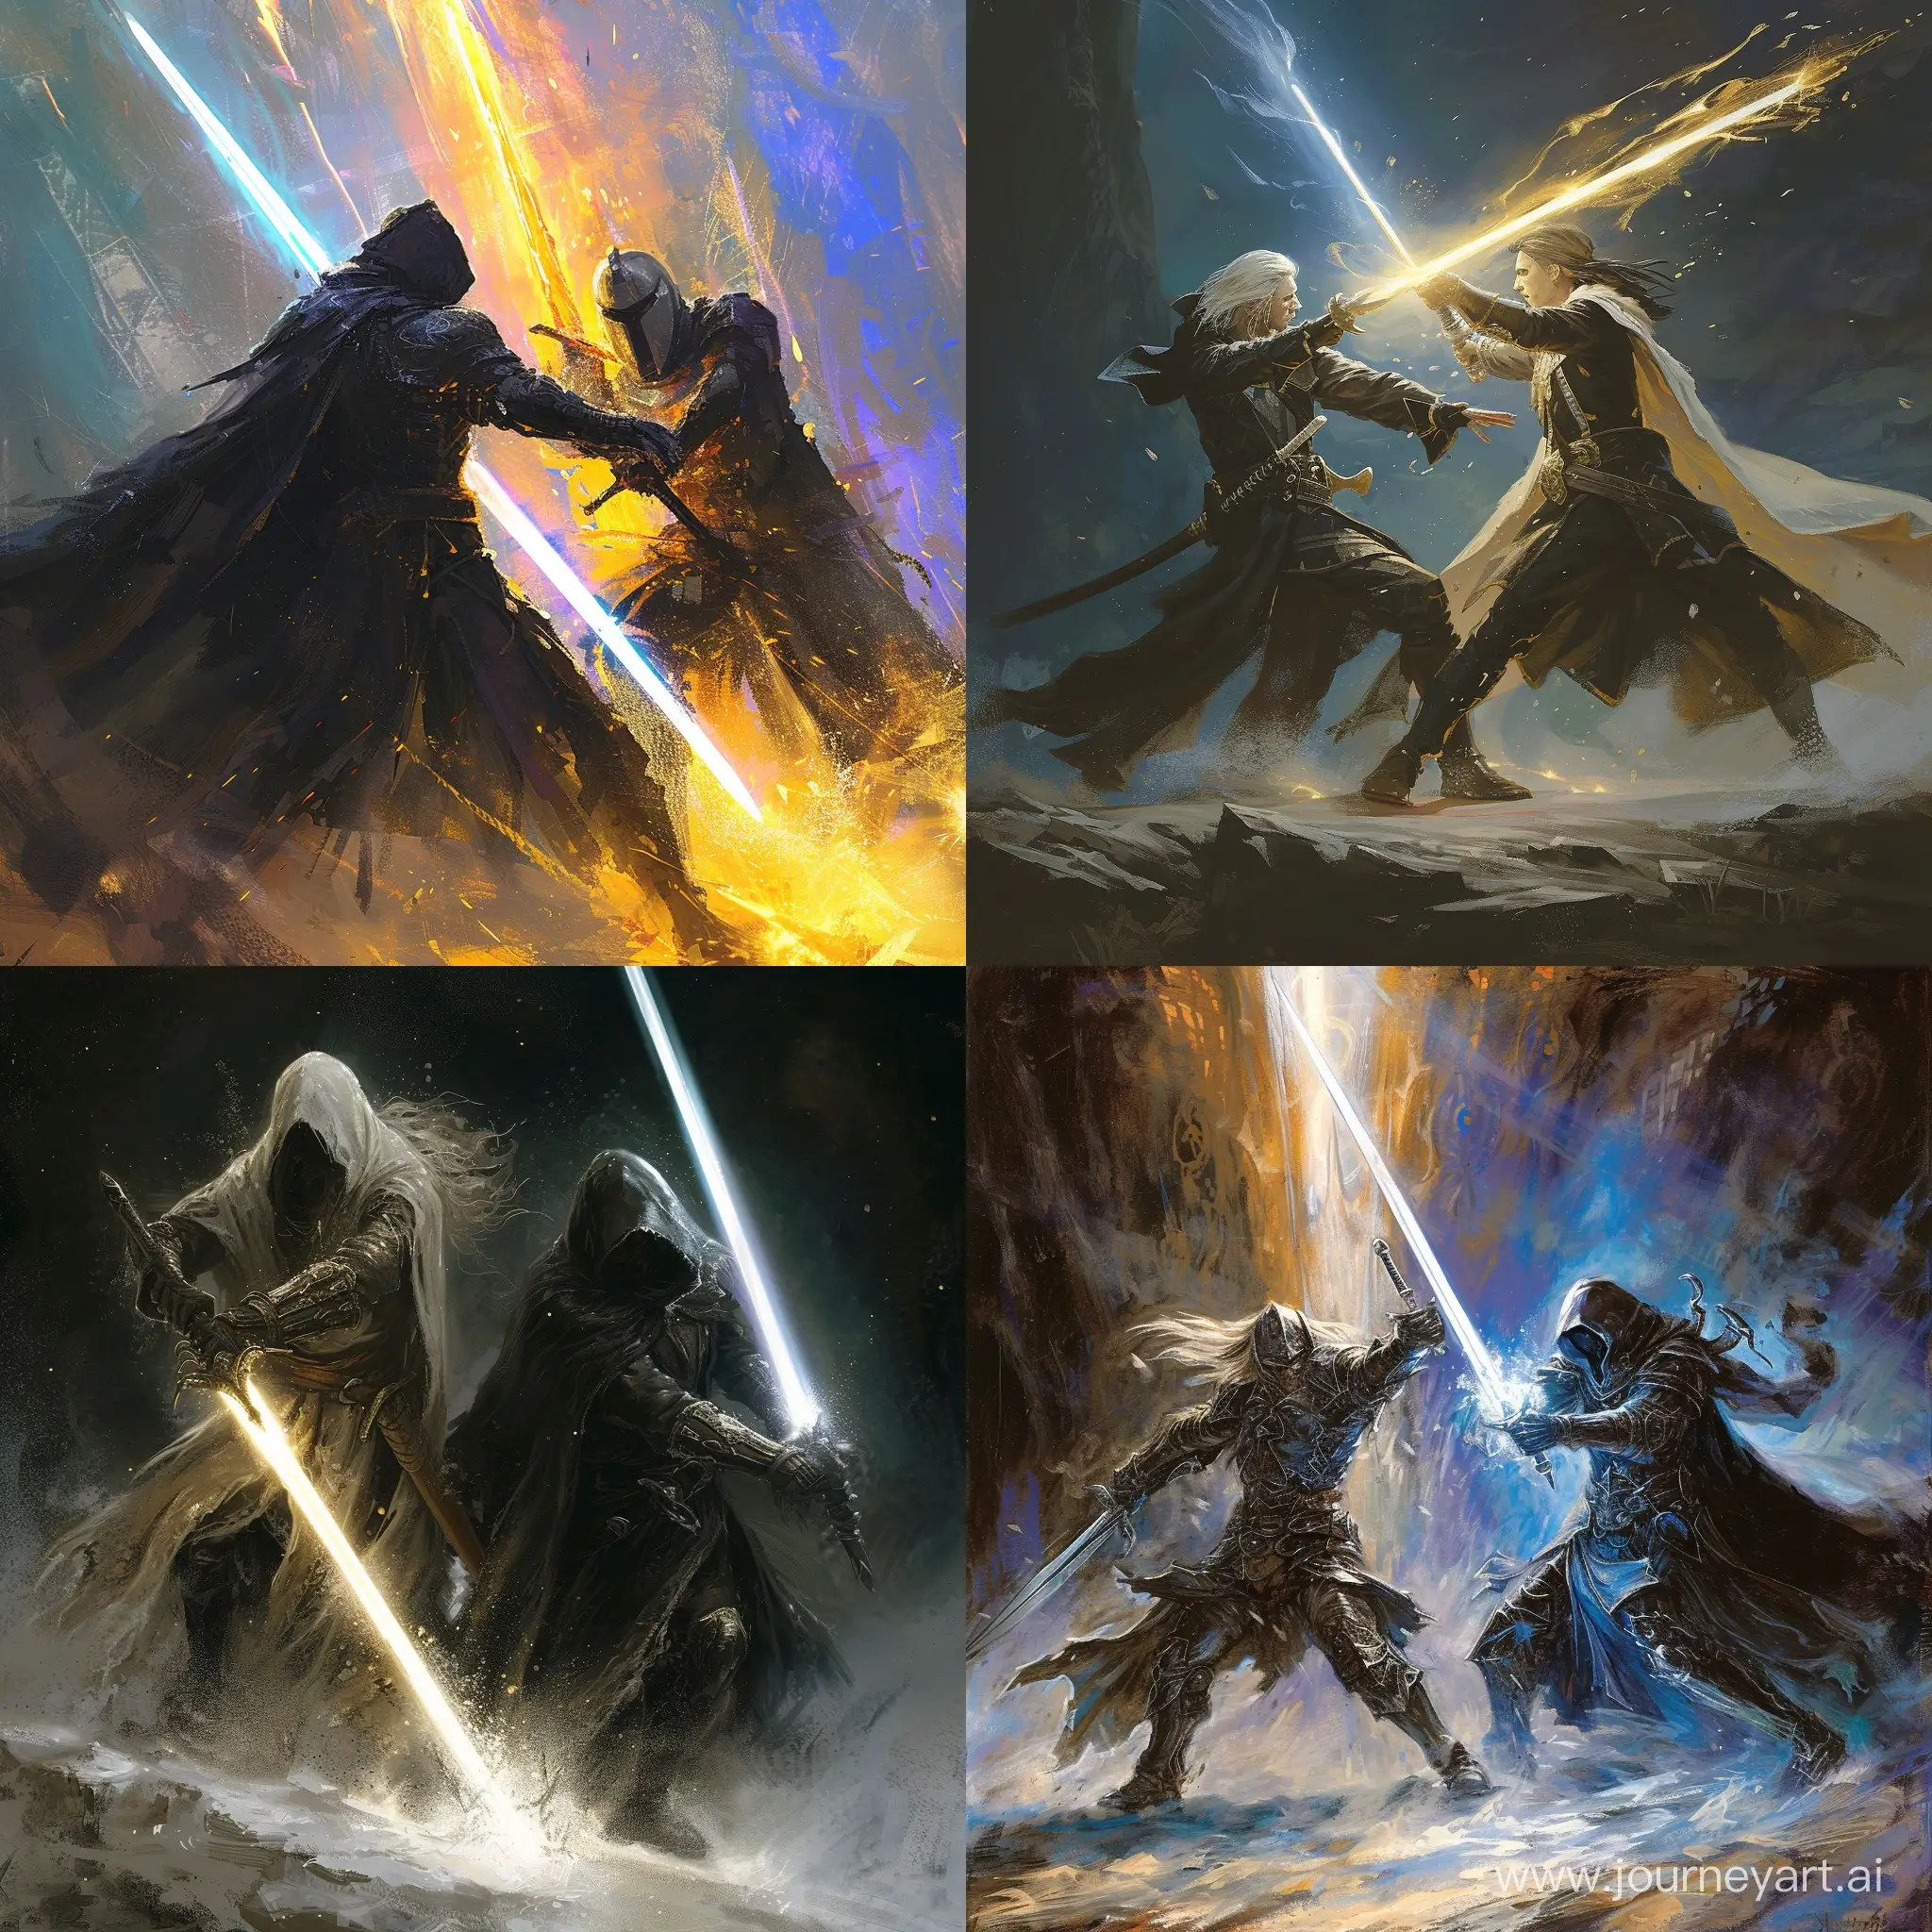 Epic-Battle-of-Light-and-Dark-Swordsmen-Artwork